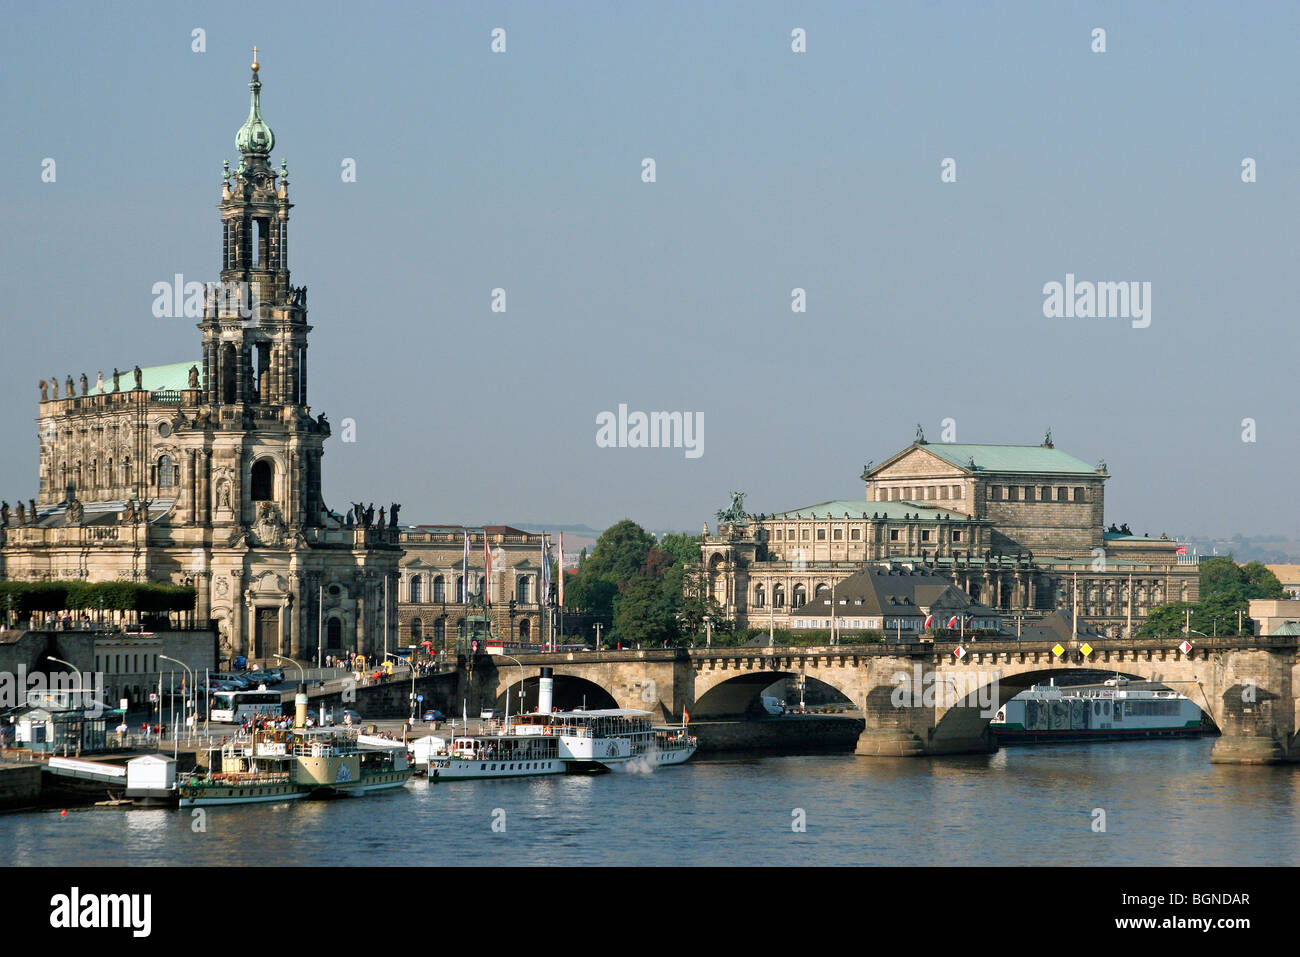 Die Katholische Hofkirche, eine römisch-katholische Kathedrale in der Altstadt in Dresden entlang des Flusses Elbe, Deutschland Stockfoto